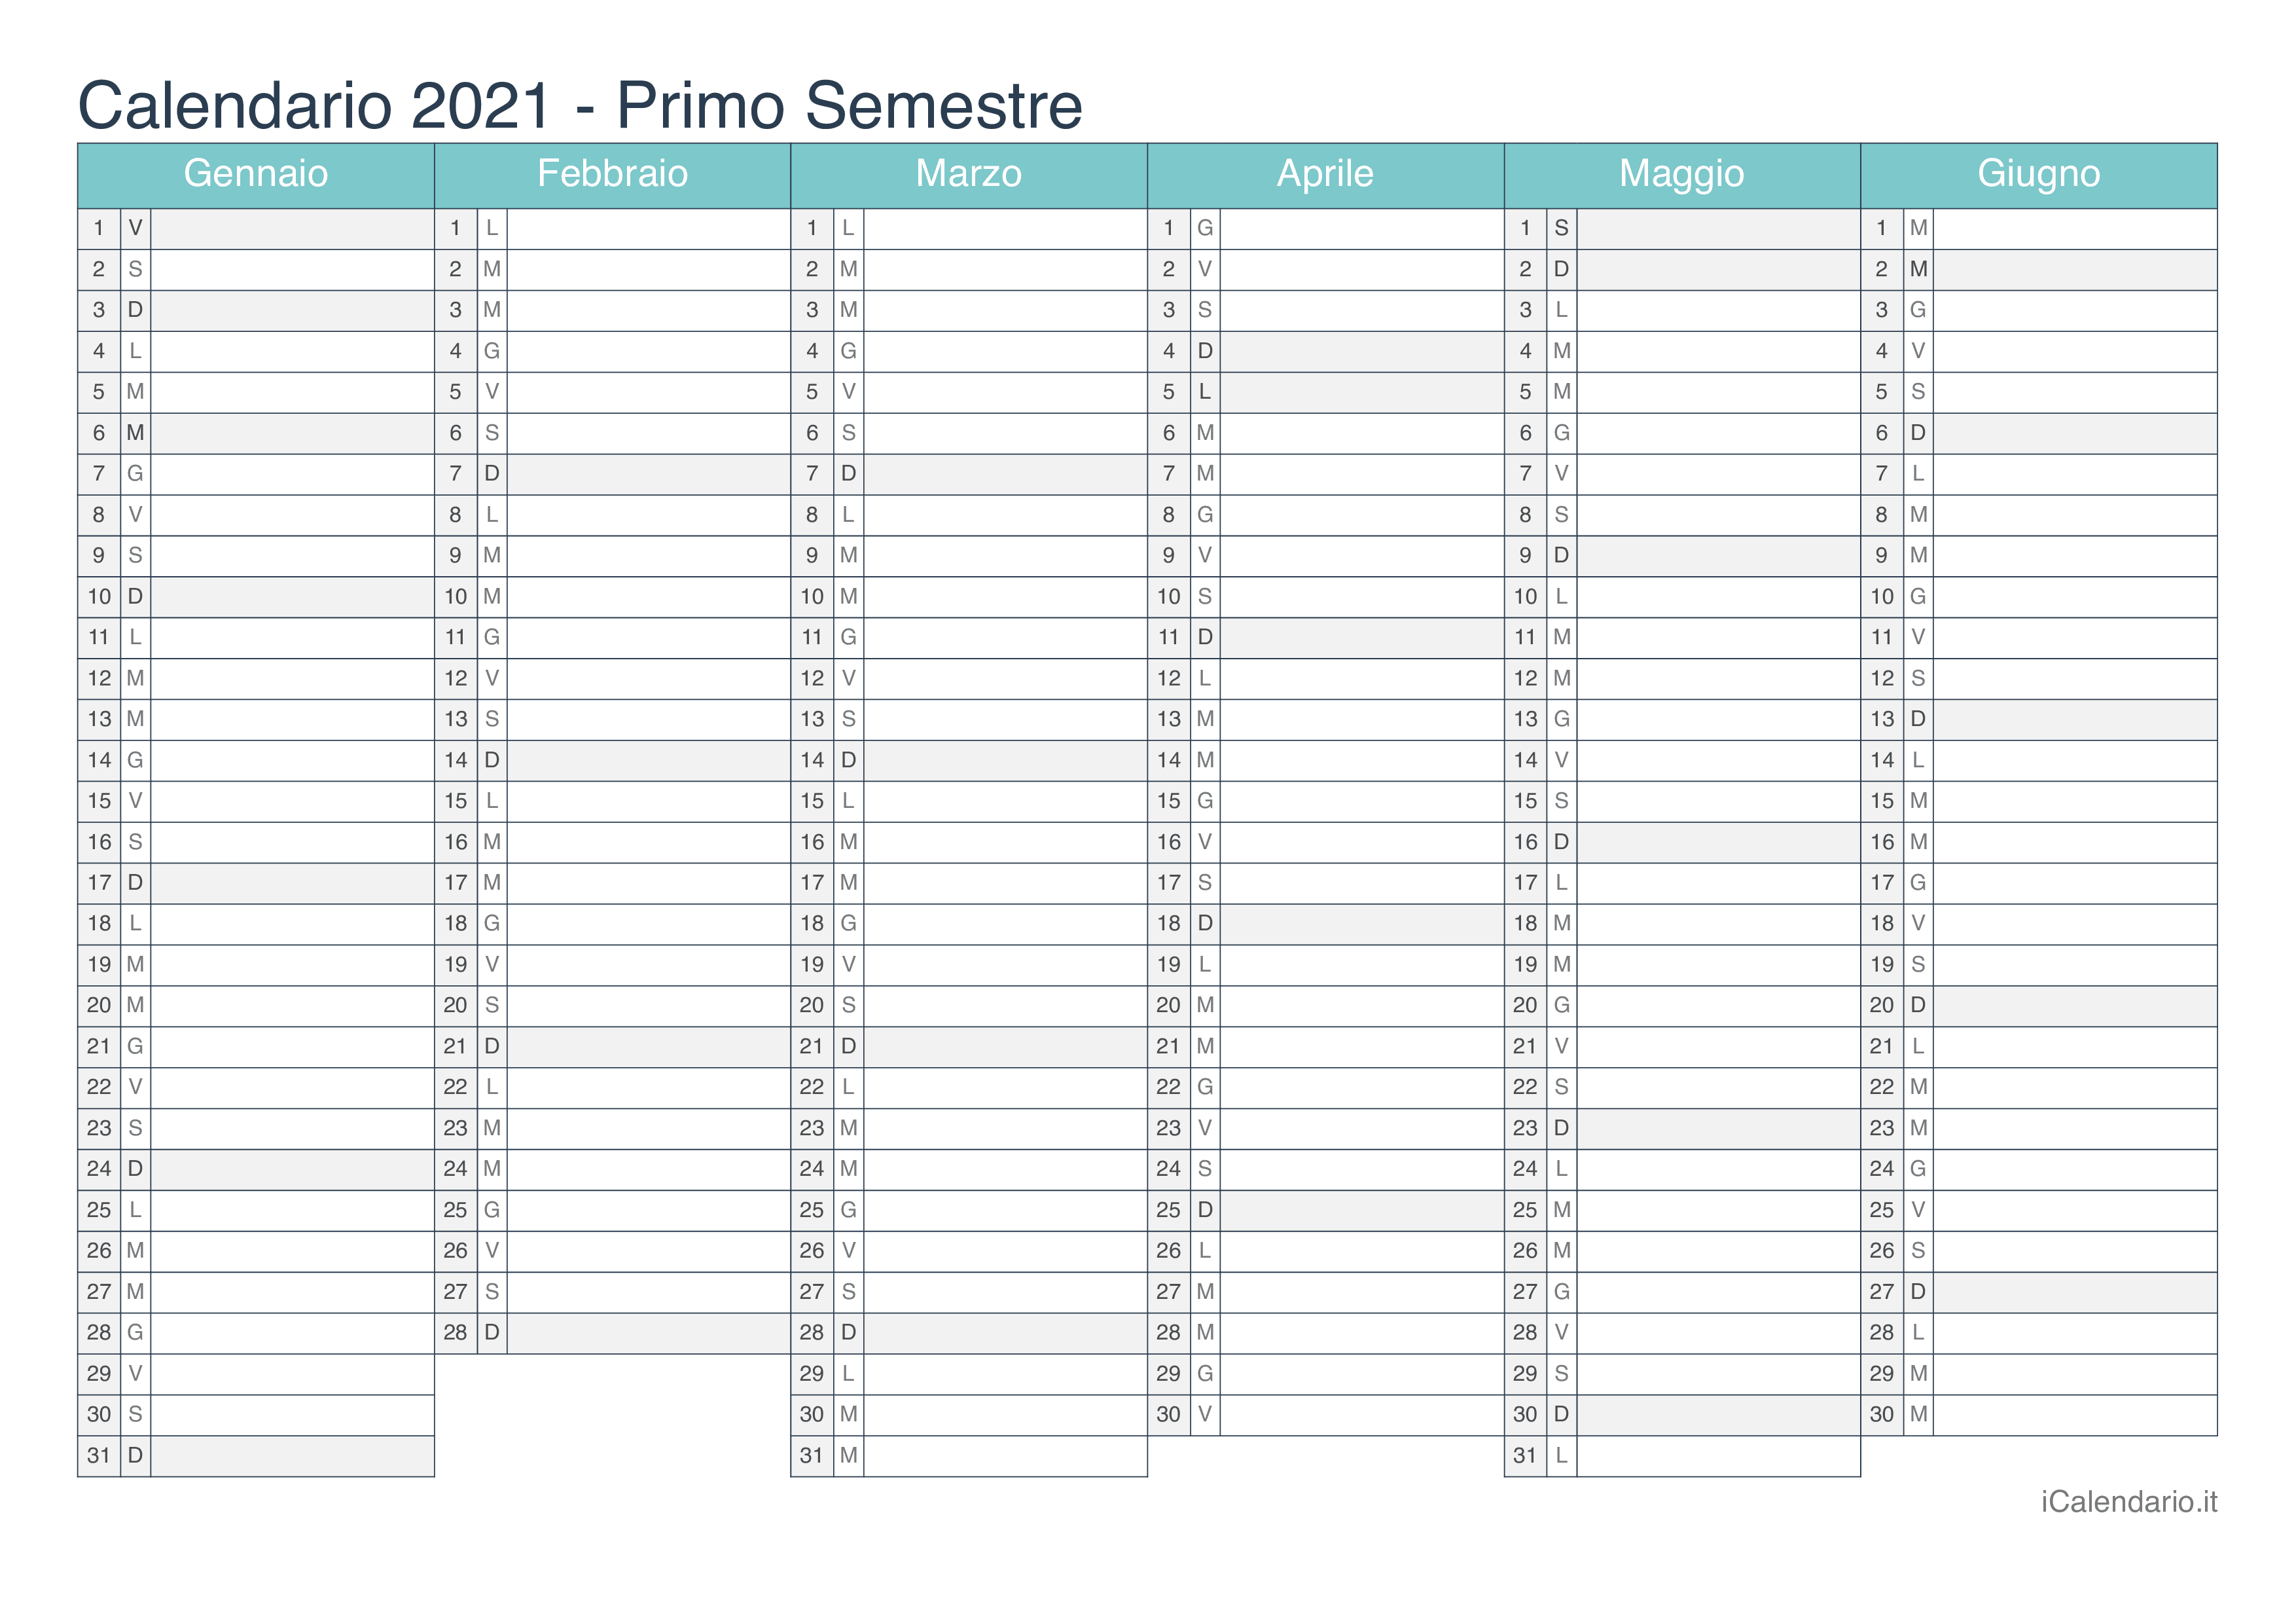 Calendario semestrale 2021 - Turchese